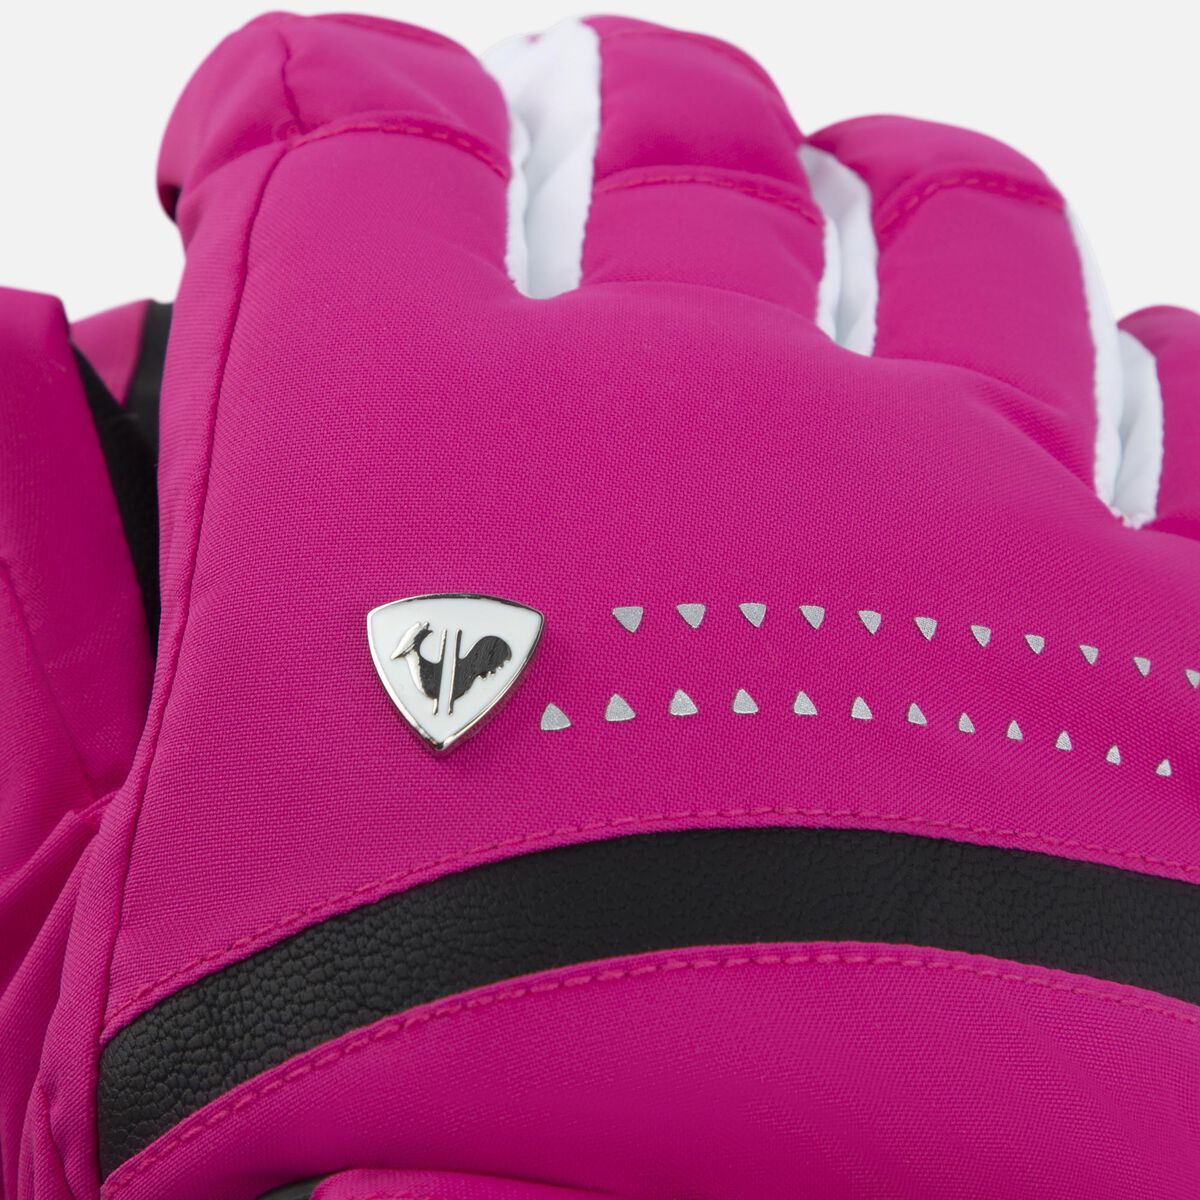 Women's Nova waterproof ski gloves